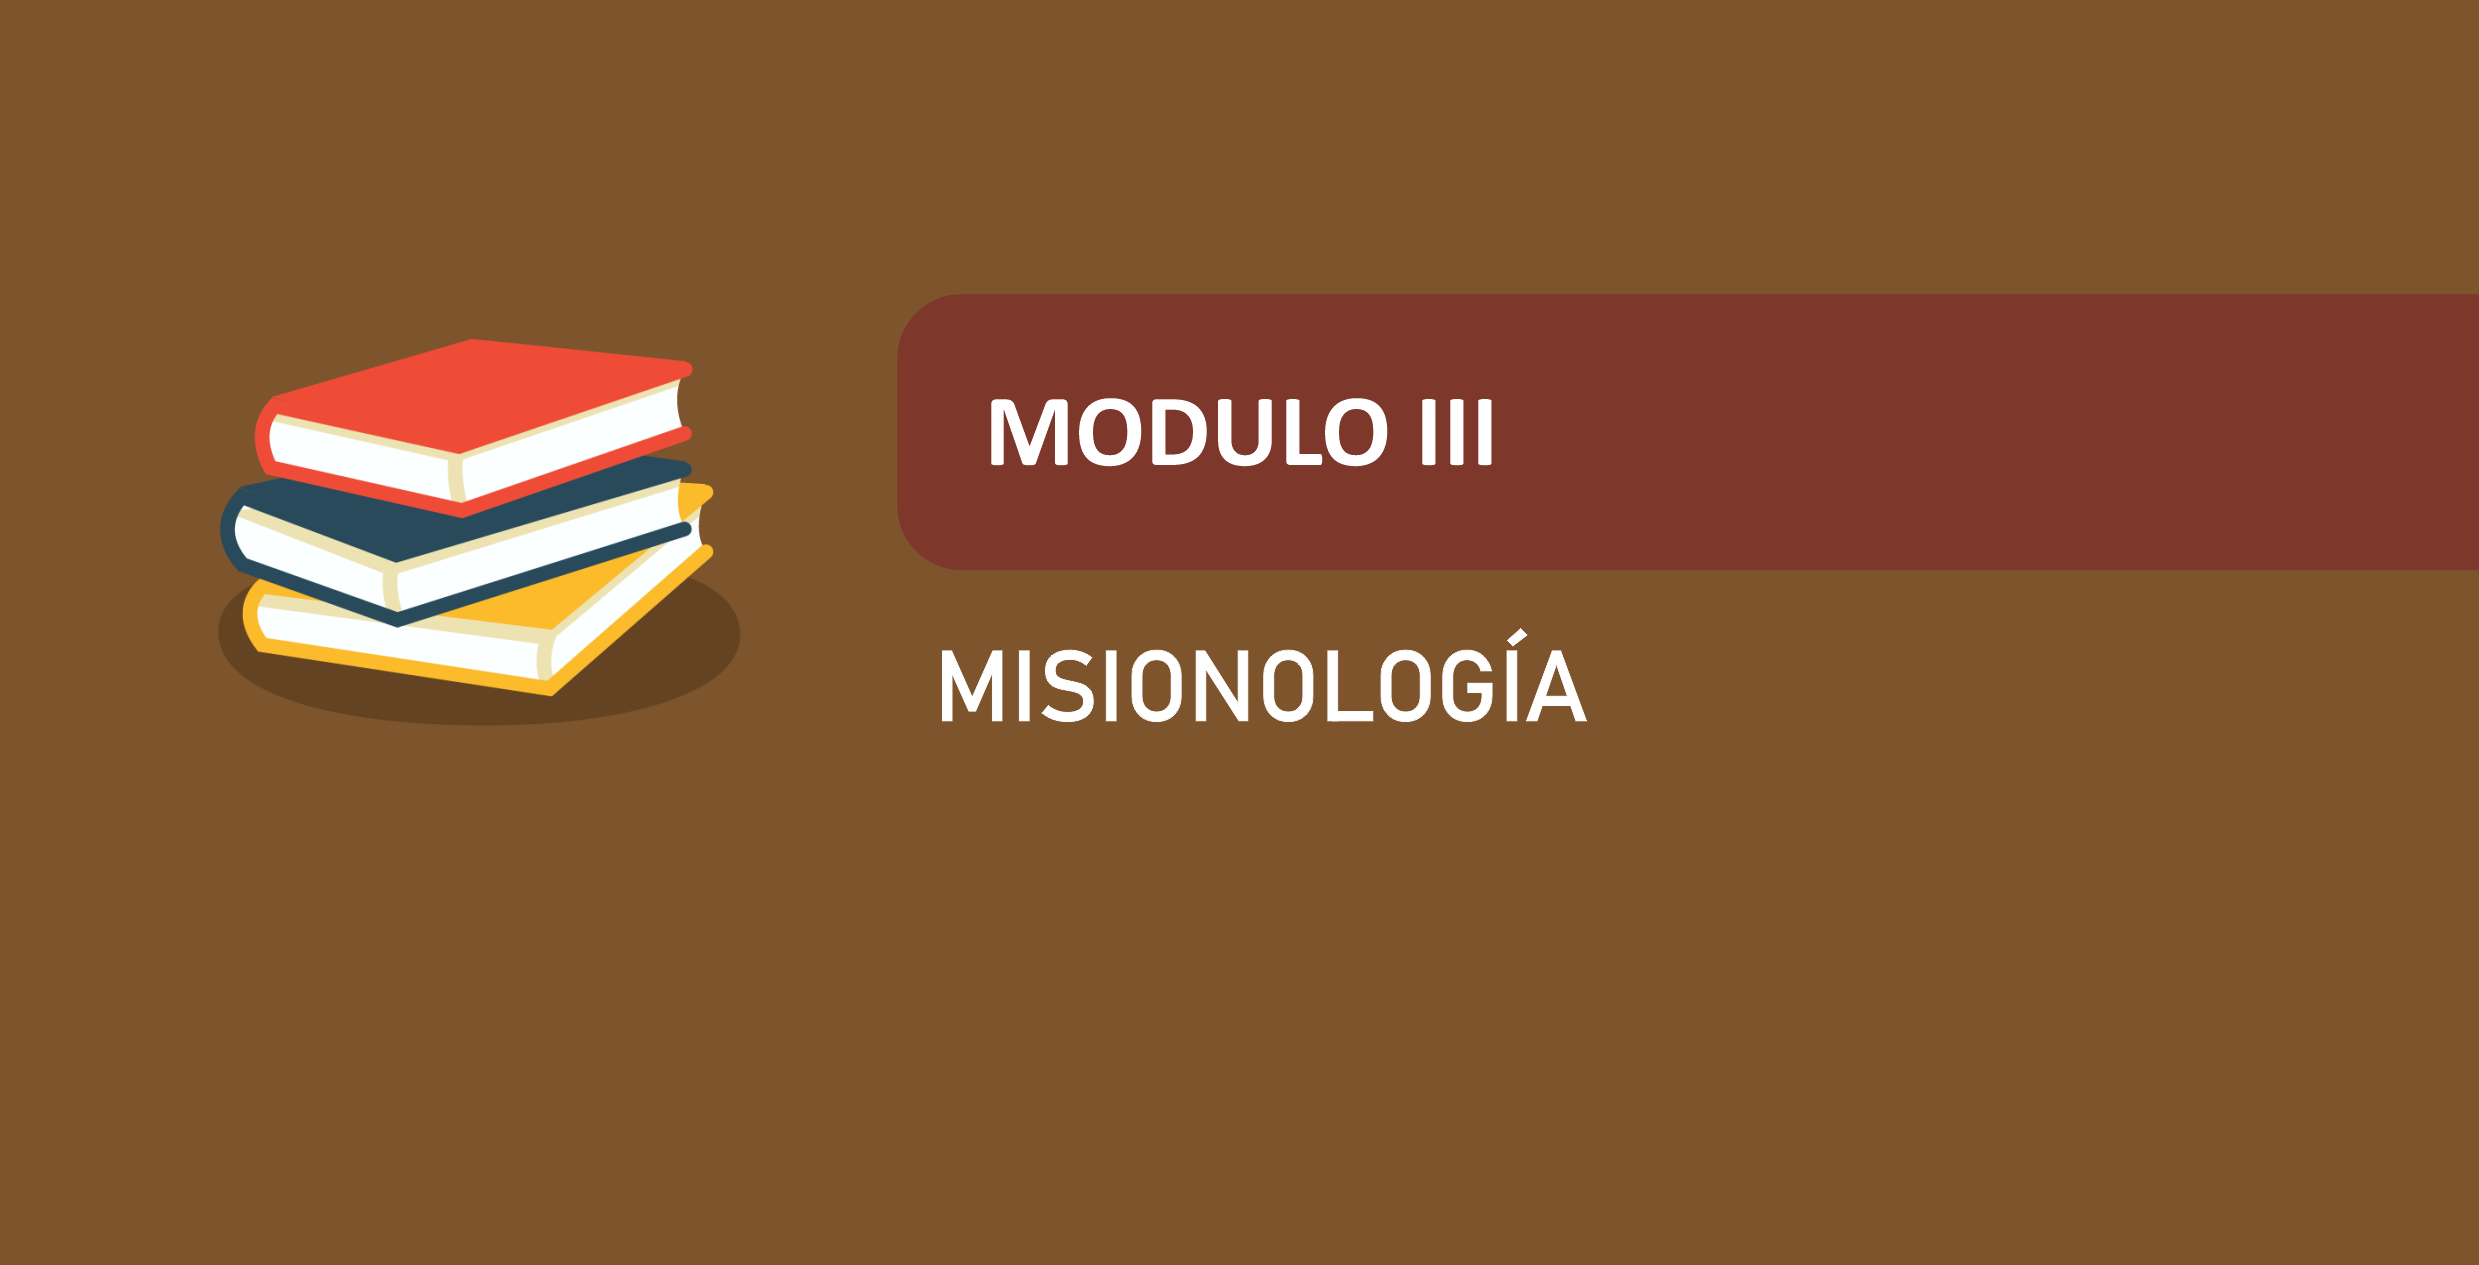 MISIONOLOGIA